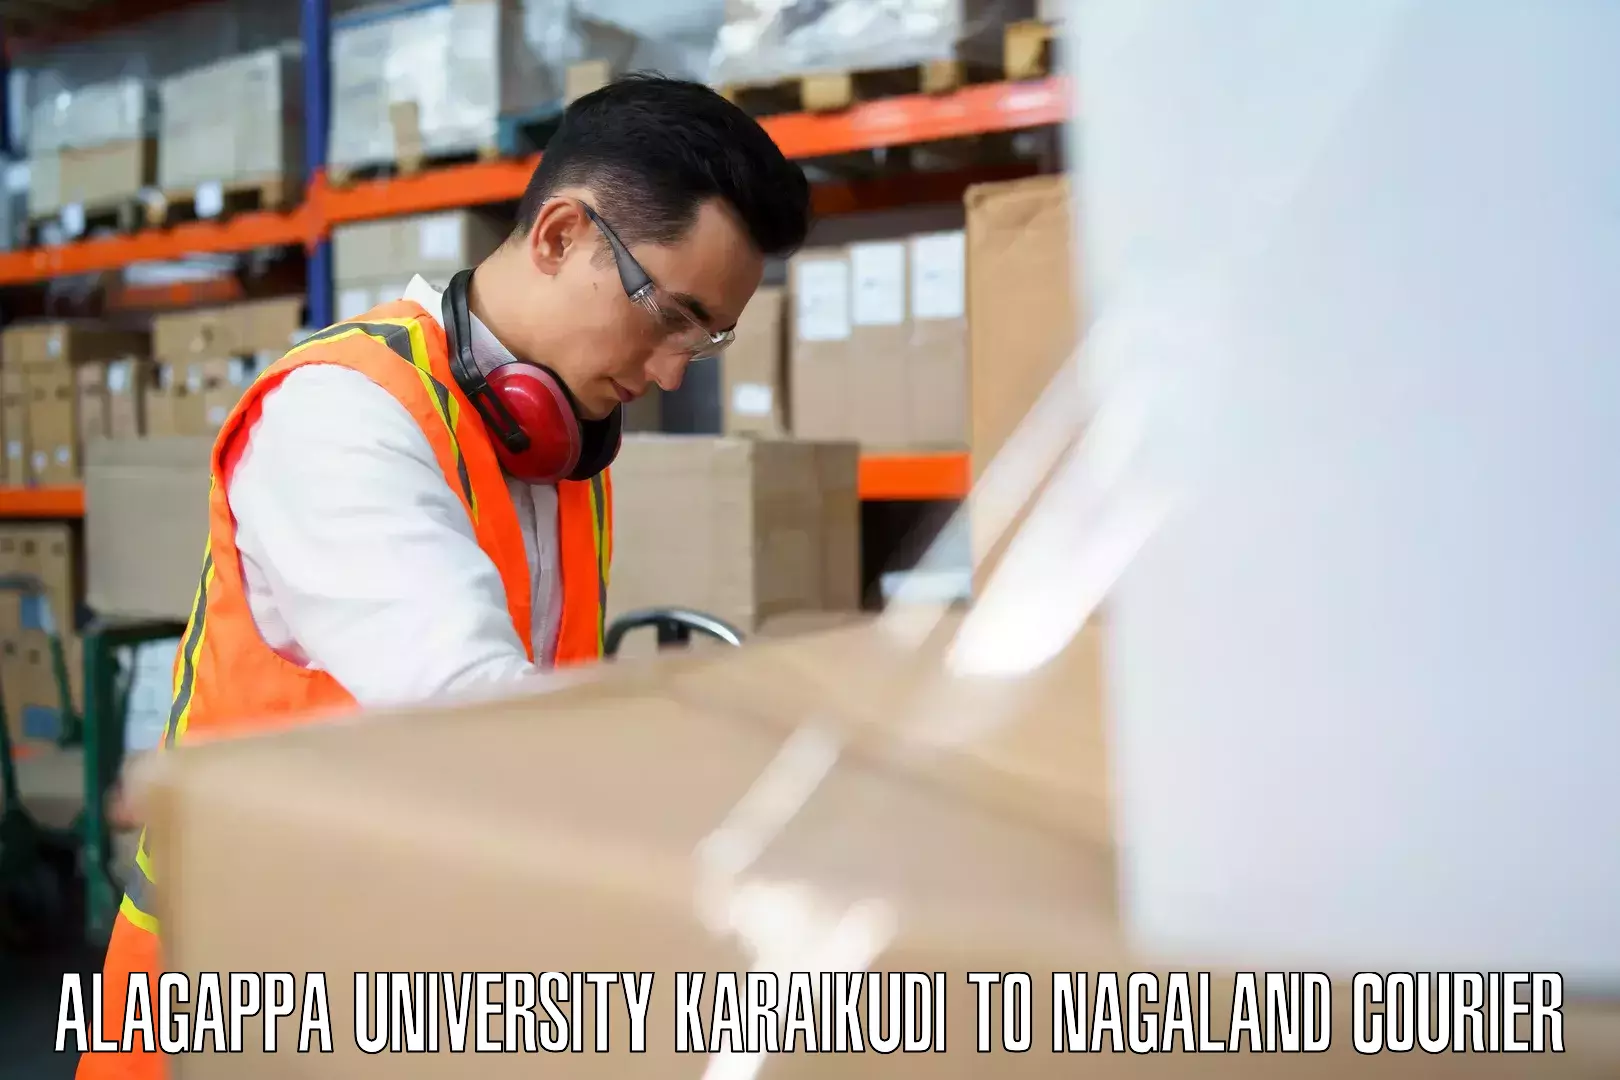 Baggage transport innovation Alagappa University Karaikudi to Wokha